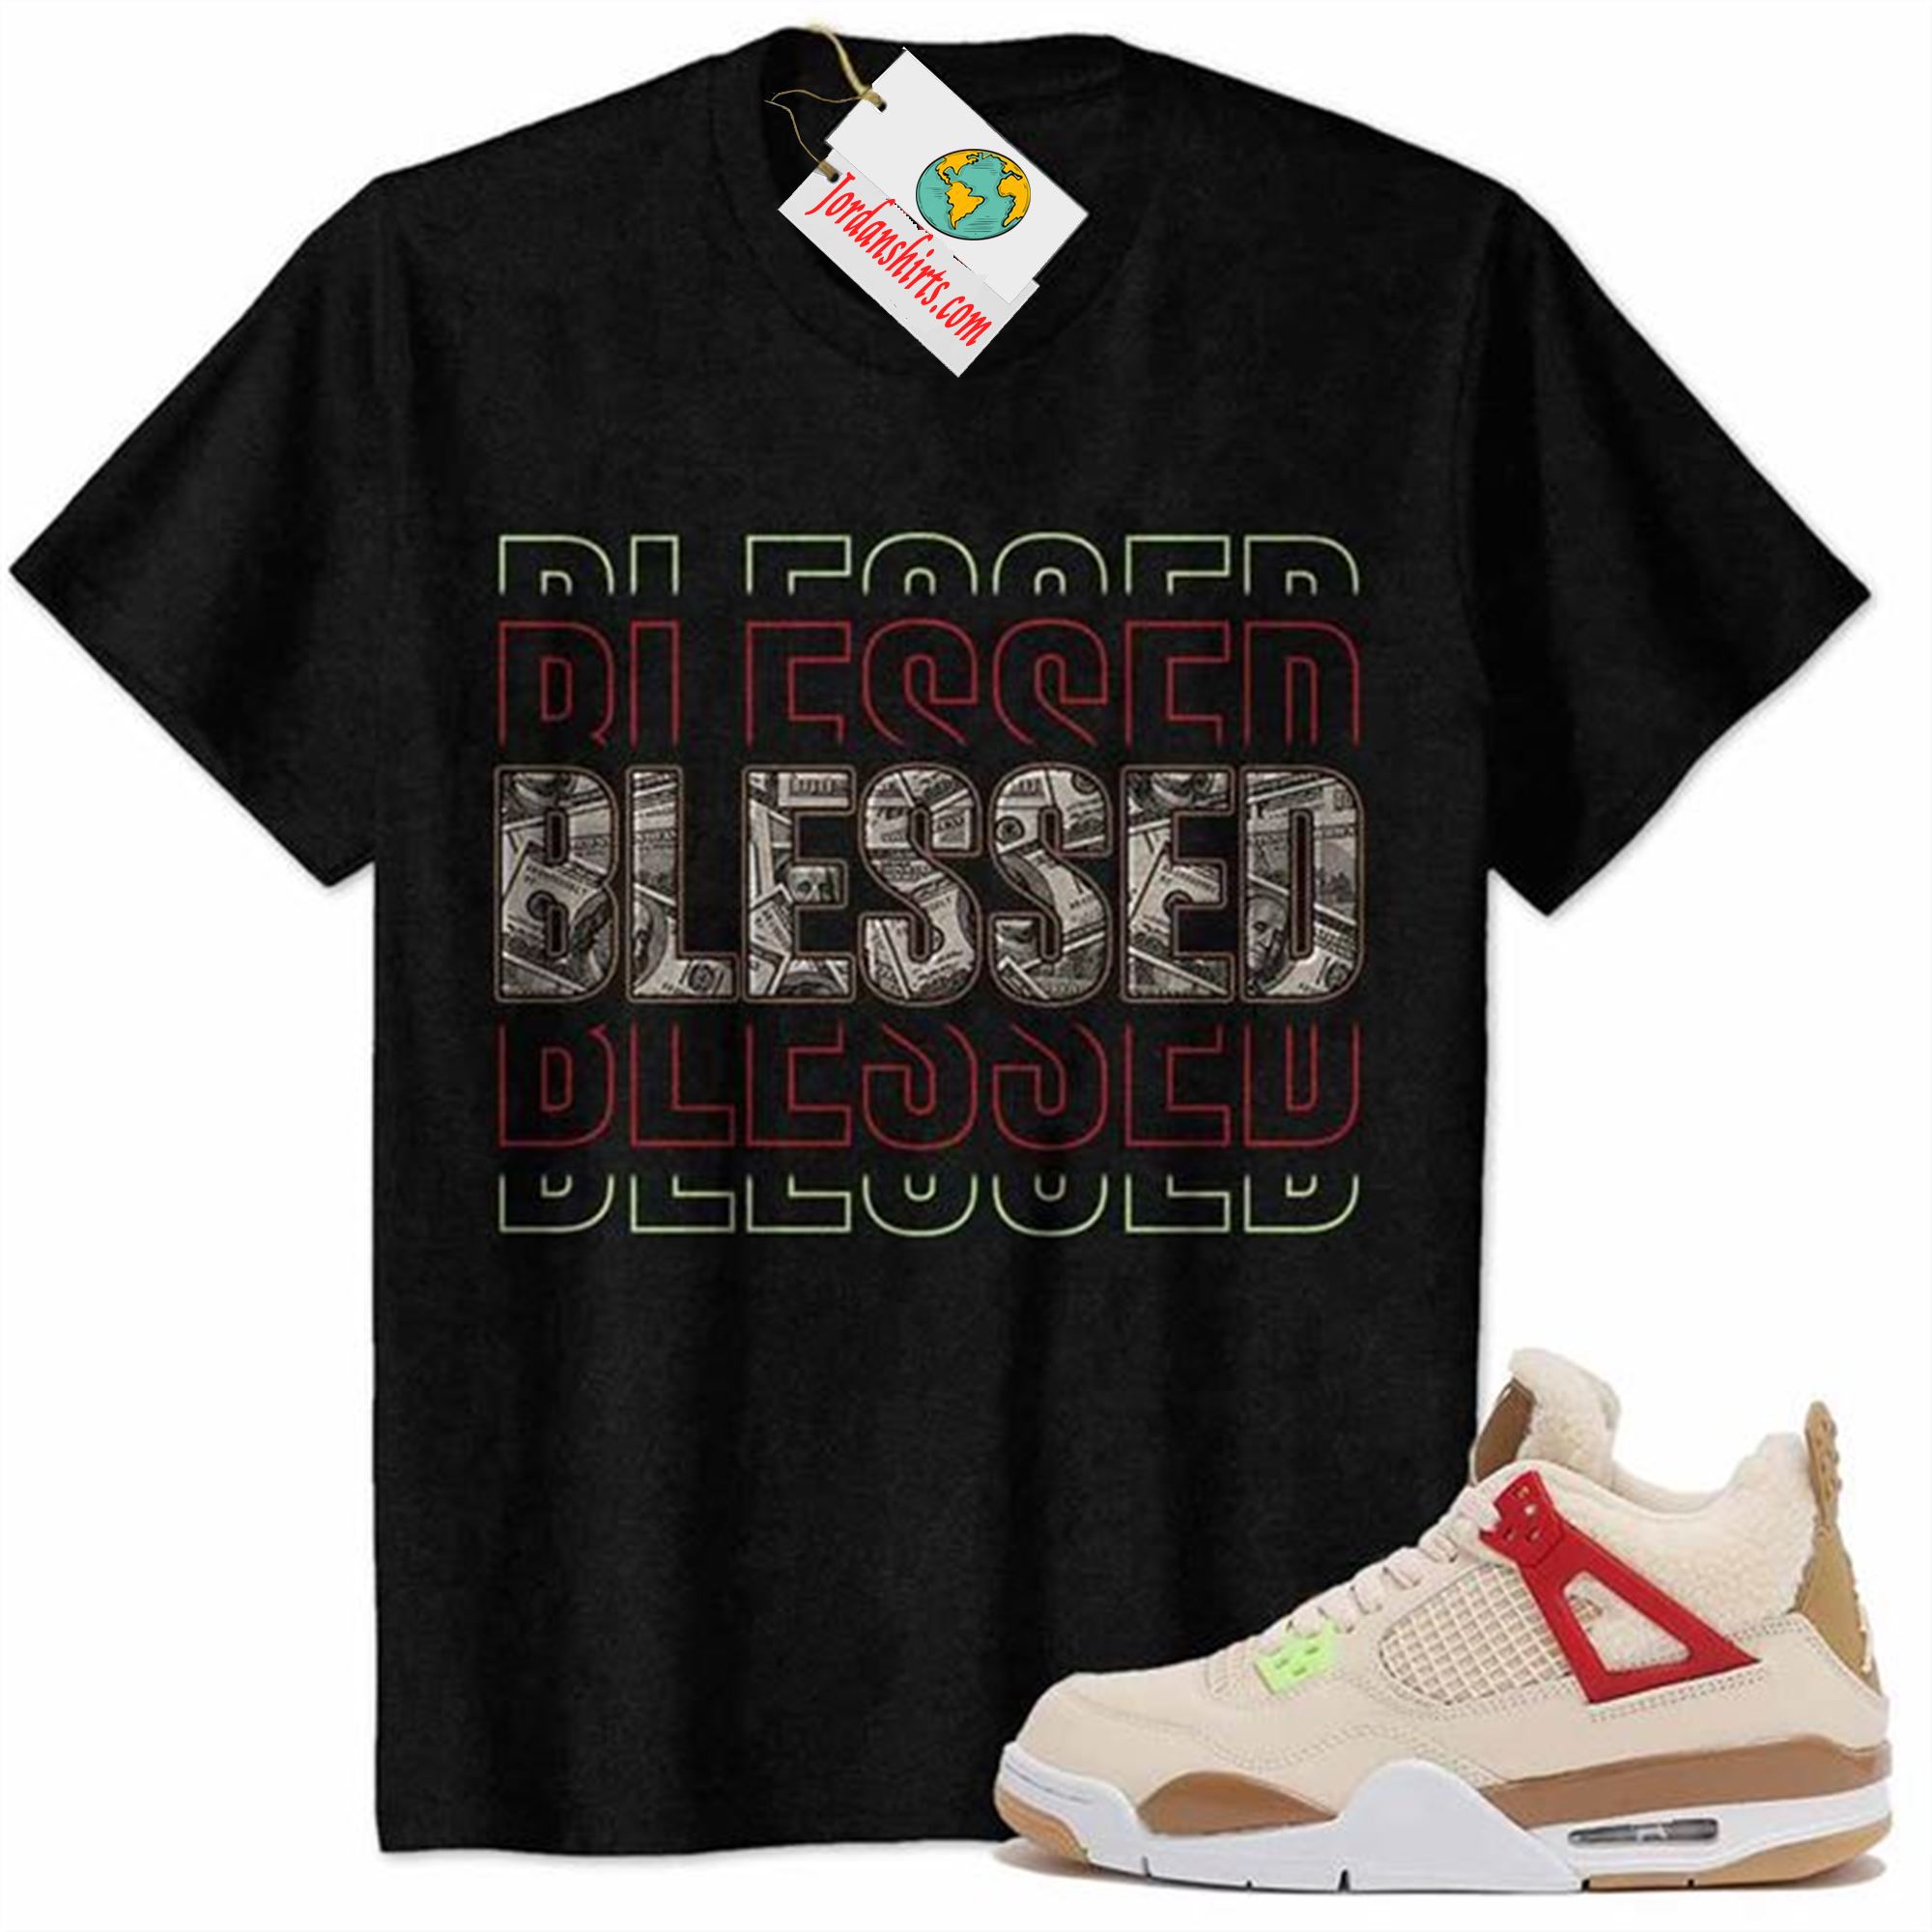 Jordan 4 Shirt, Blessed Dollar Money Black Air Jordan 4 Wild Things 4s Plus Size Up To 5xl